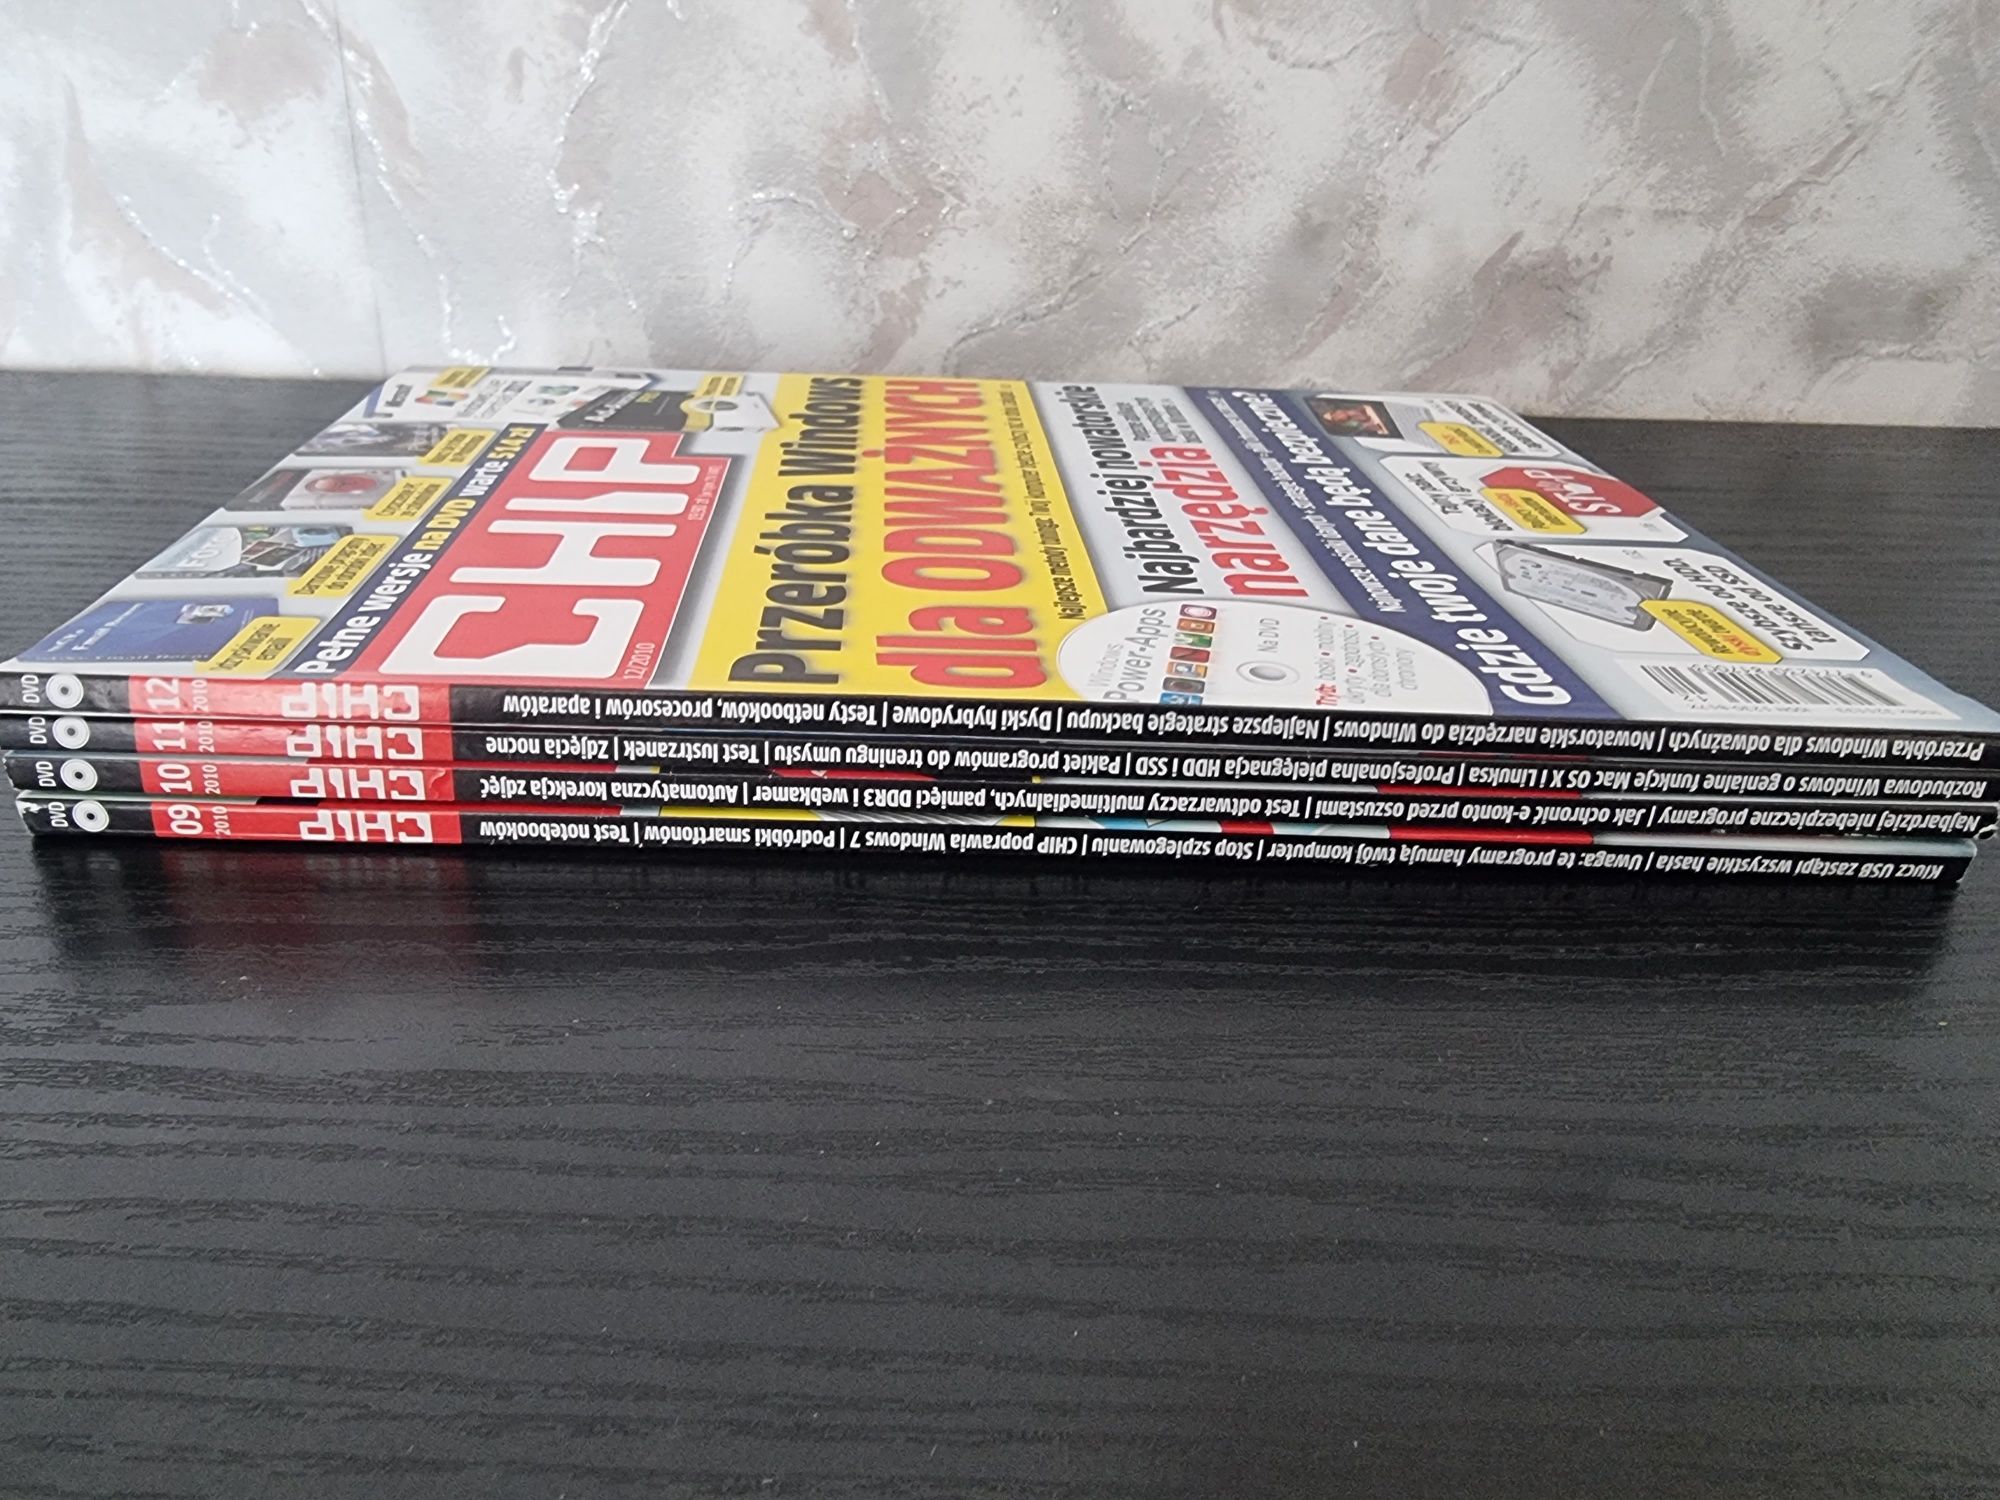 Zestaw 20 czasopism CHIP z lat 2001, 2002, 2003, 2010 dla kolekcjonera